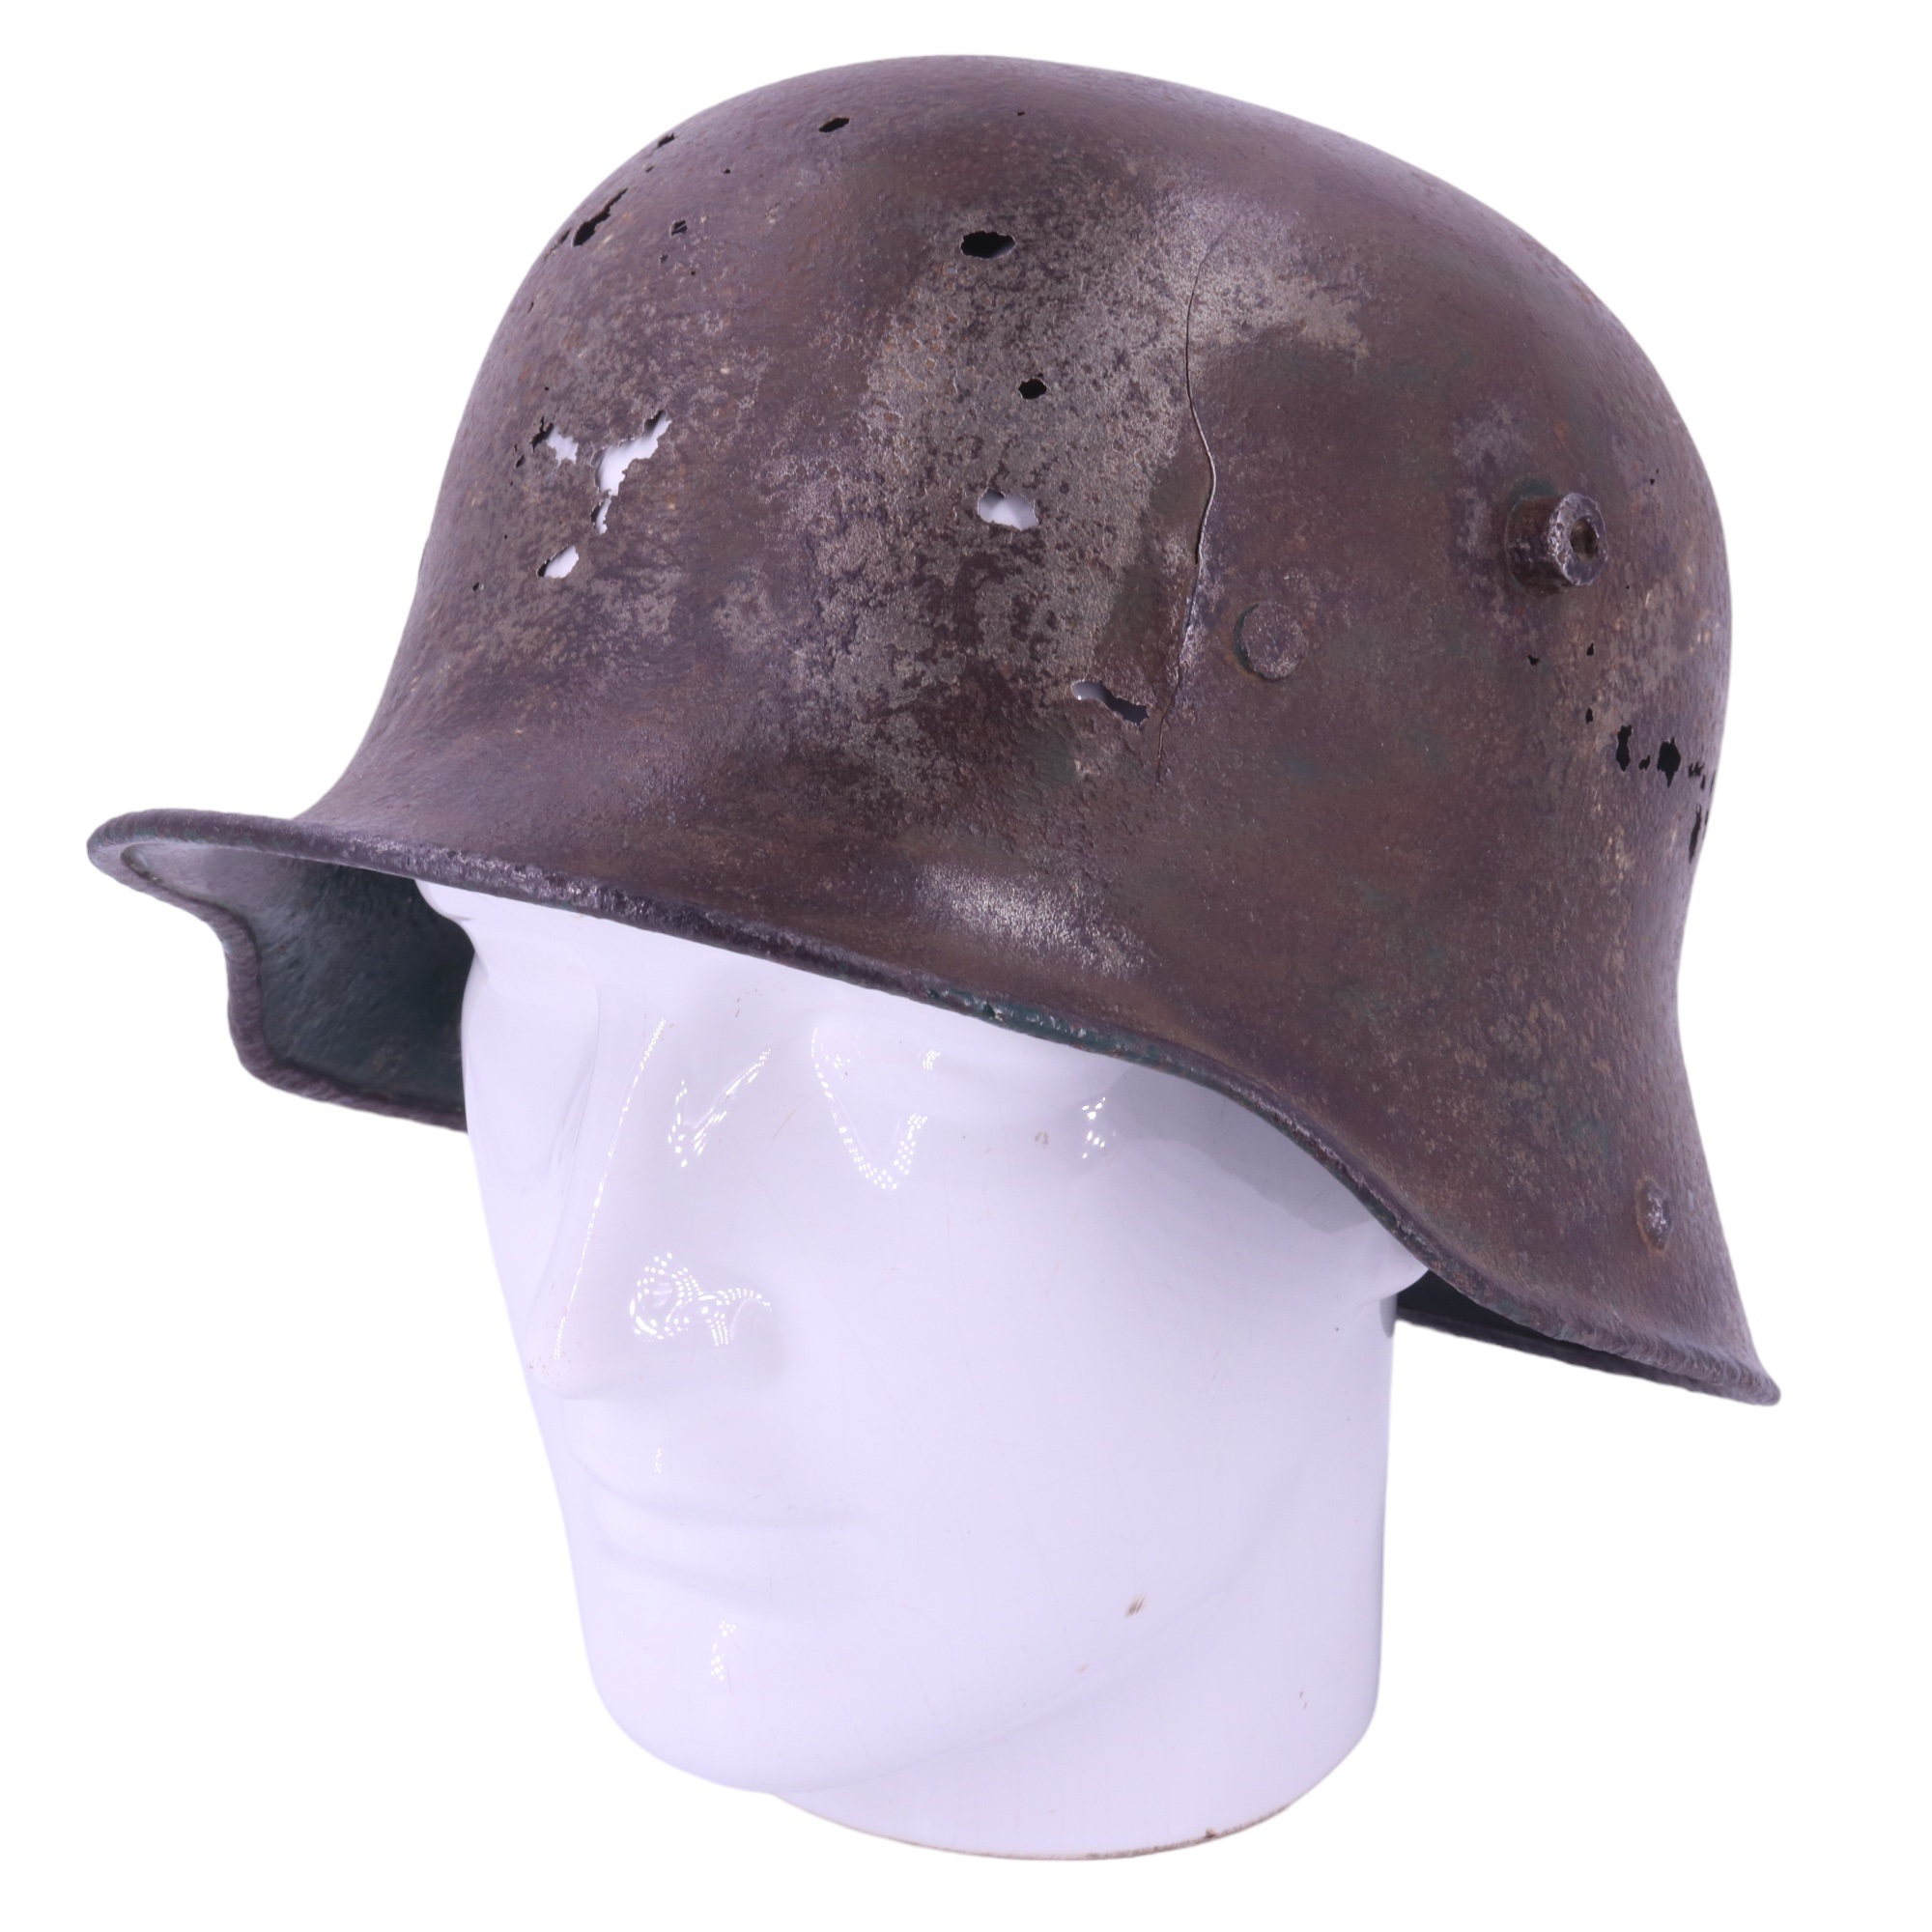 A relic Imperial German steel helmet